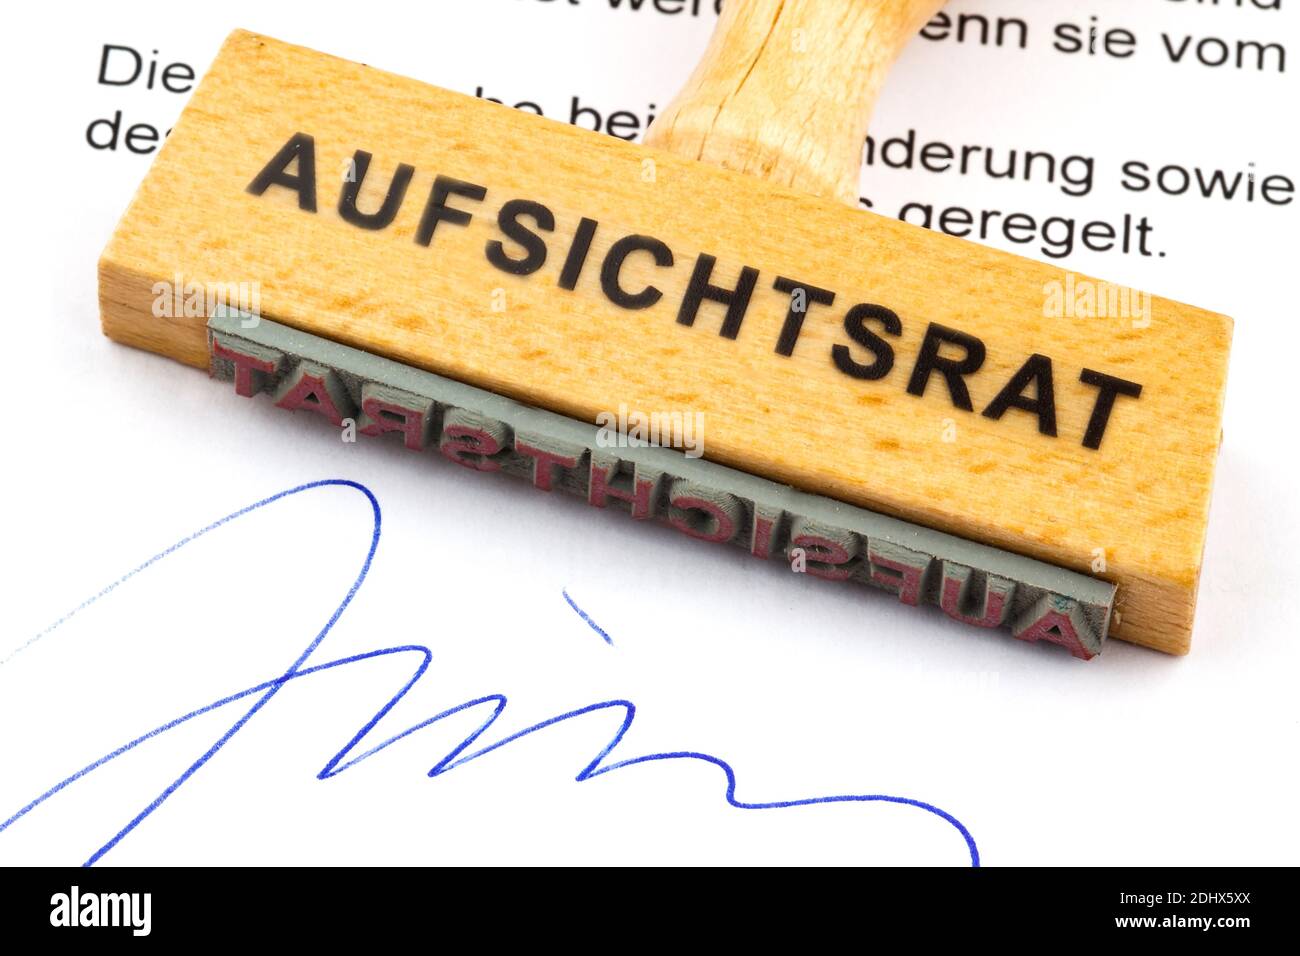 Ein Stempel aus Holz liegt auf einem Dokument. Deutsche Aufschrift: Aufsichtsrat Foto Stock